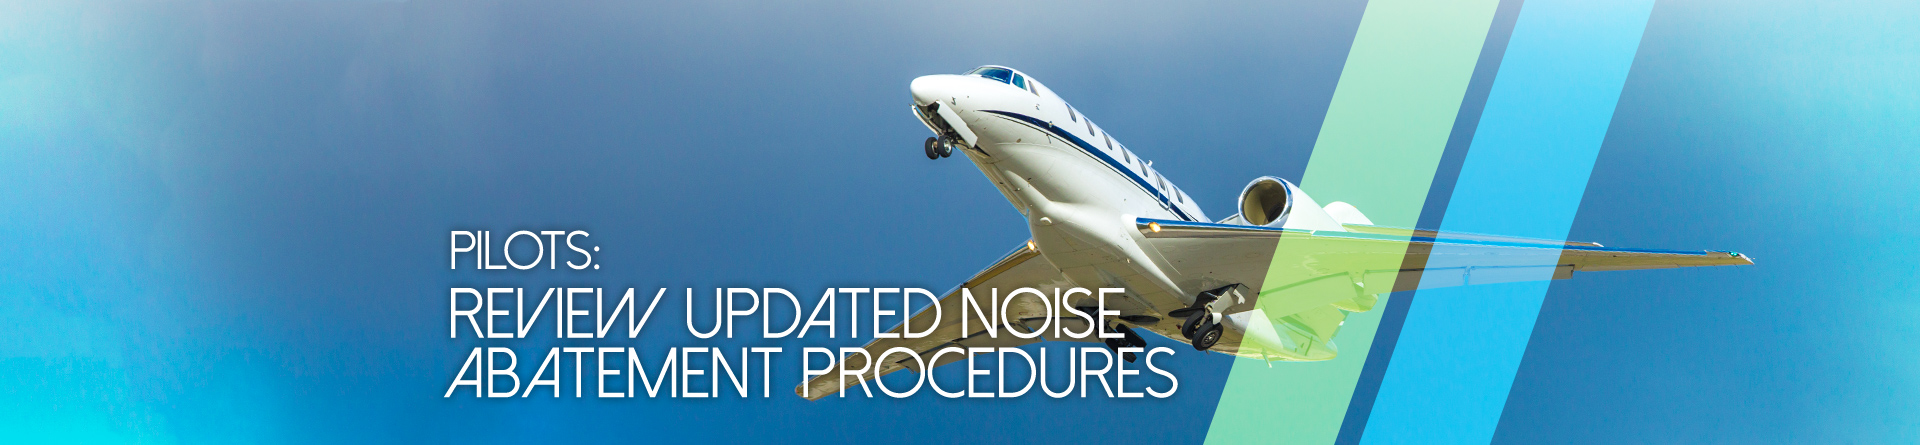 Banner - Pilots: Review Updated Noise Abatement Procedures